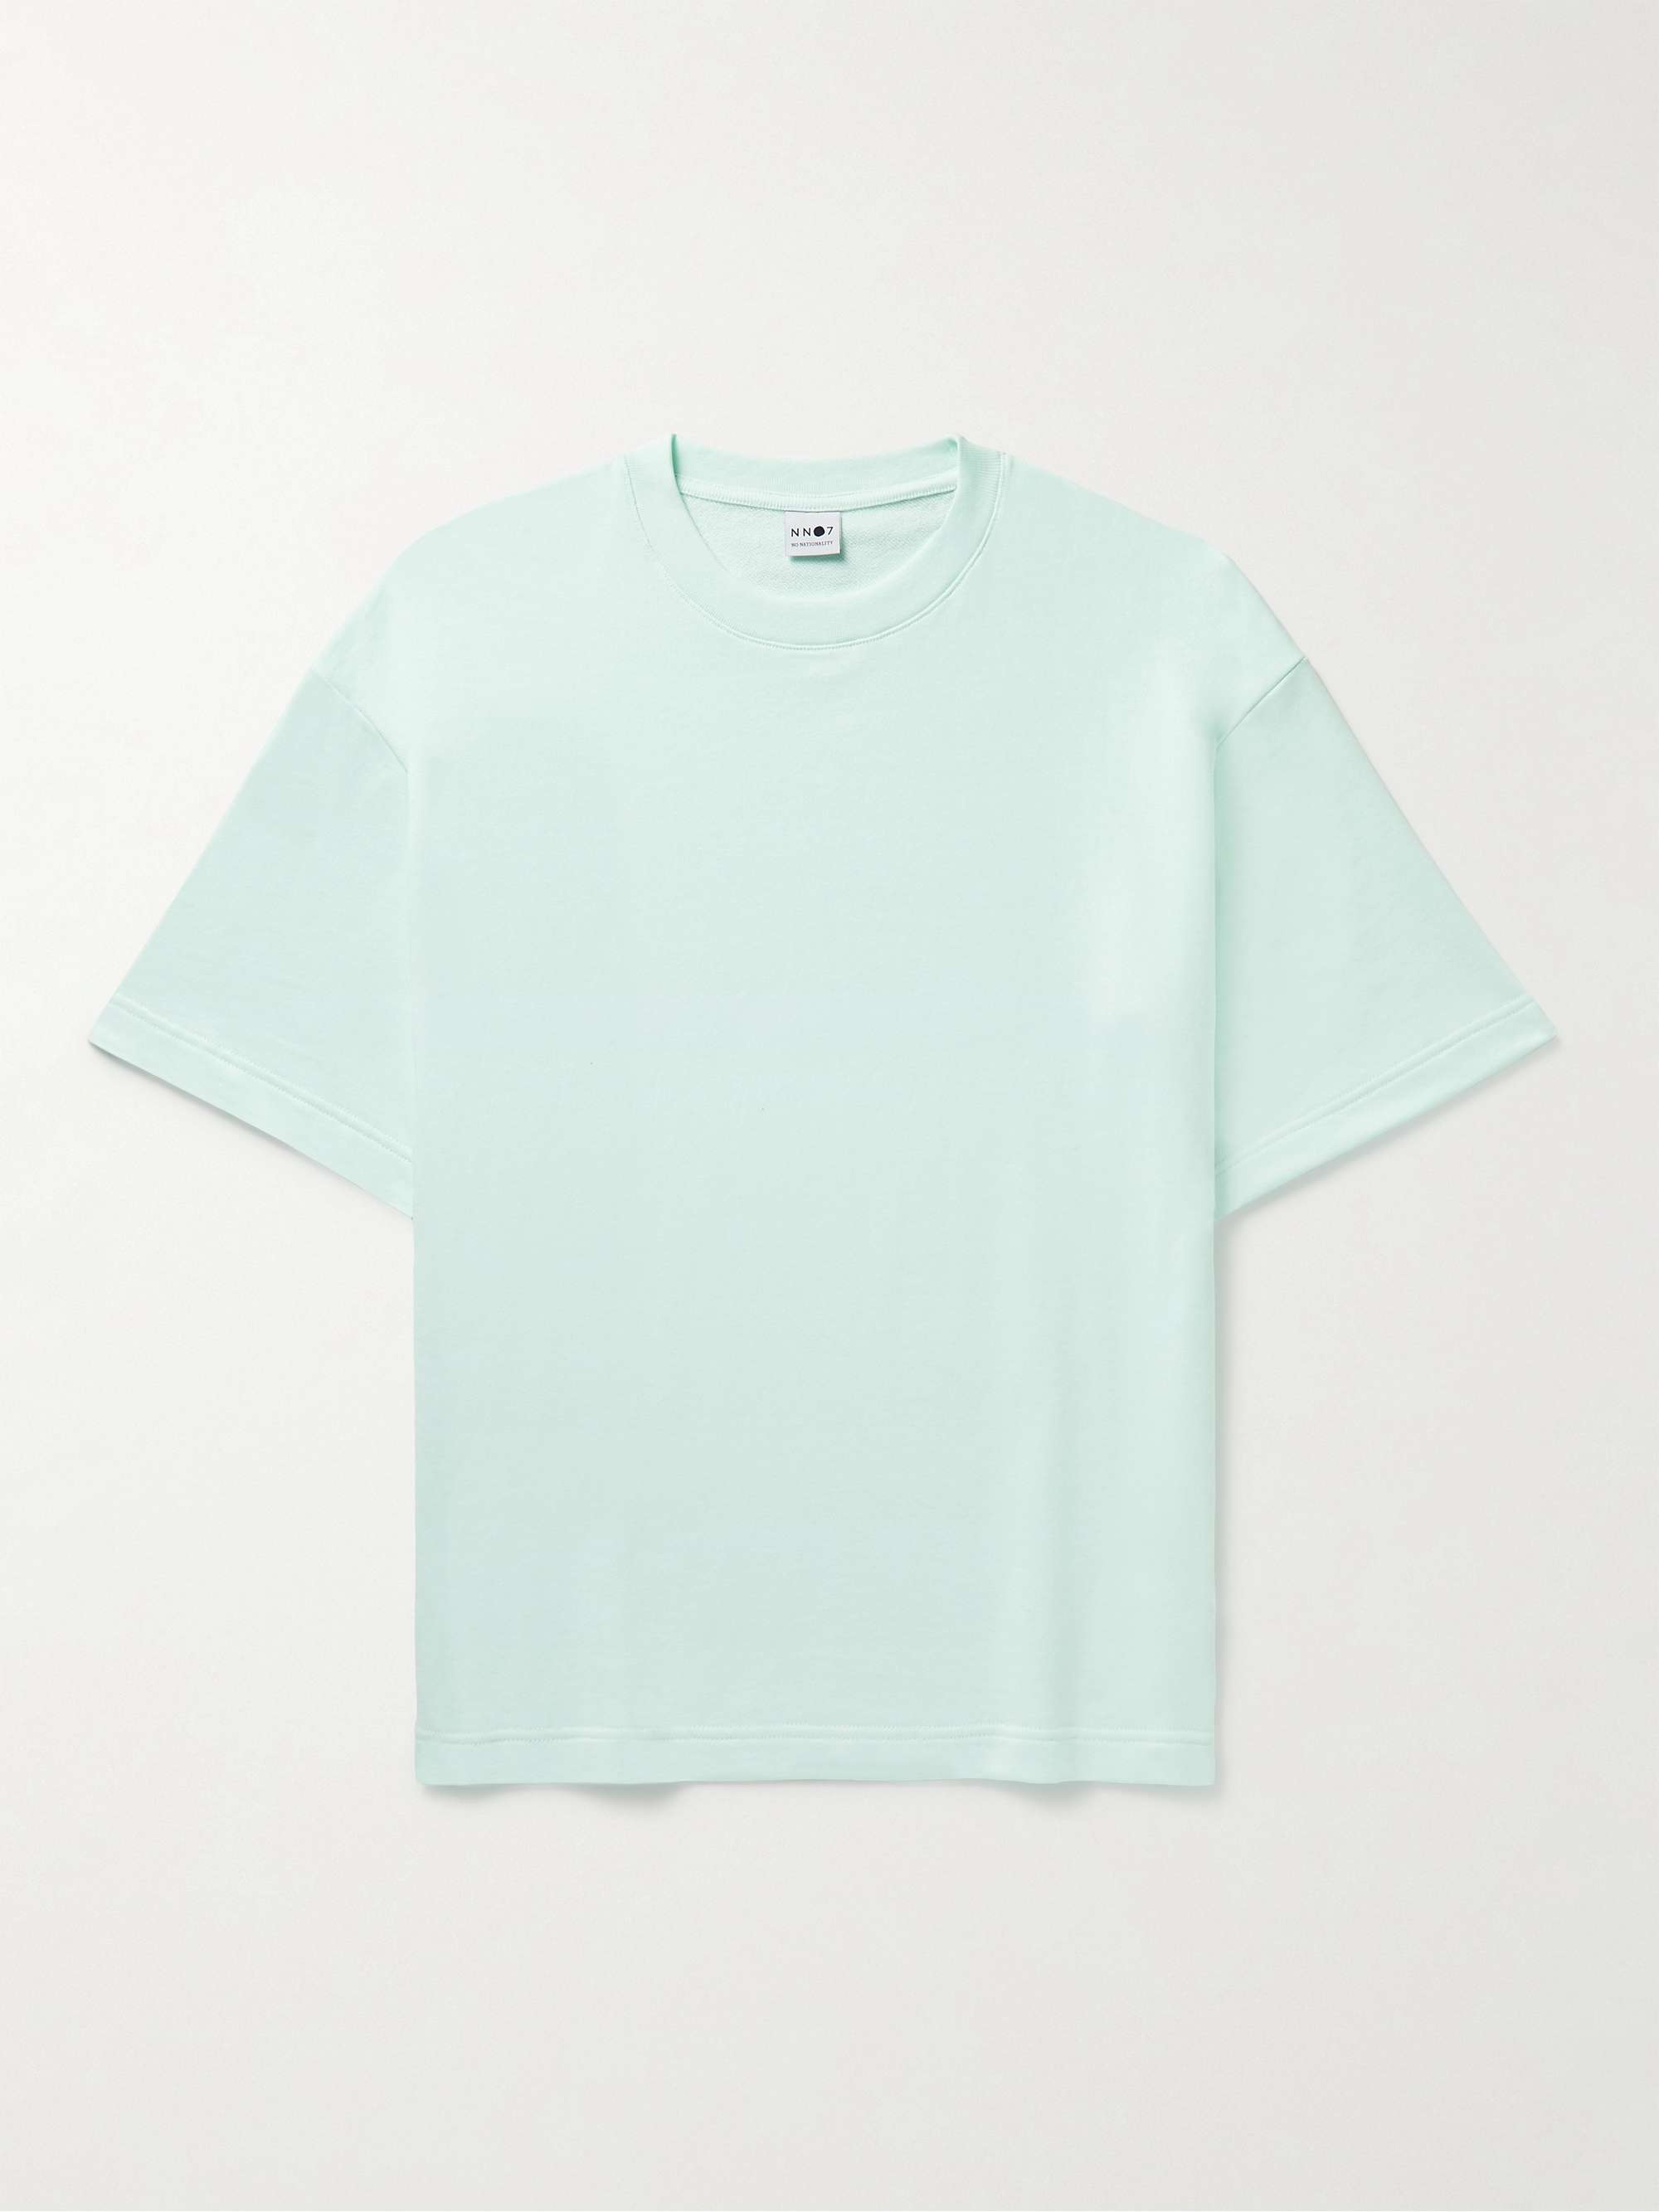 NN07 Alan Cotton-Jersey T-Shirt